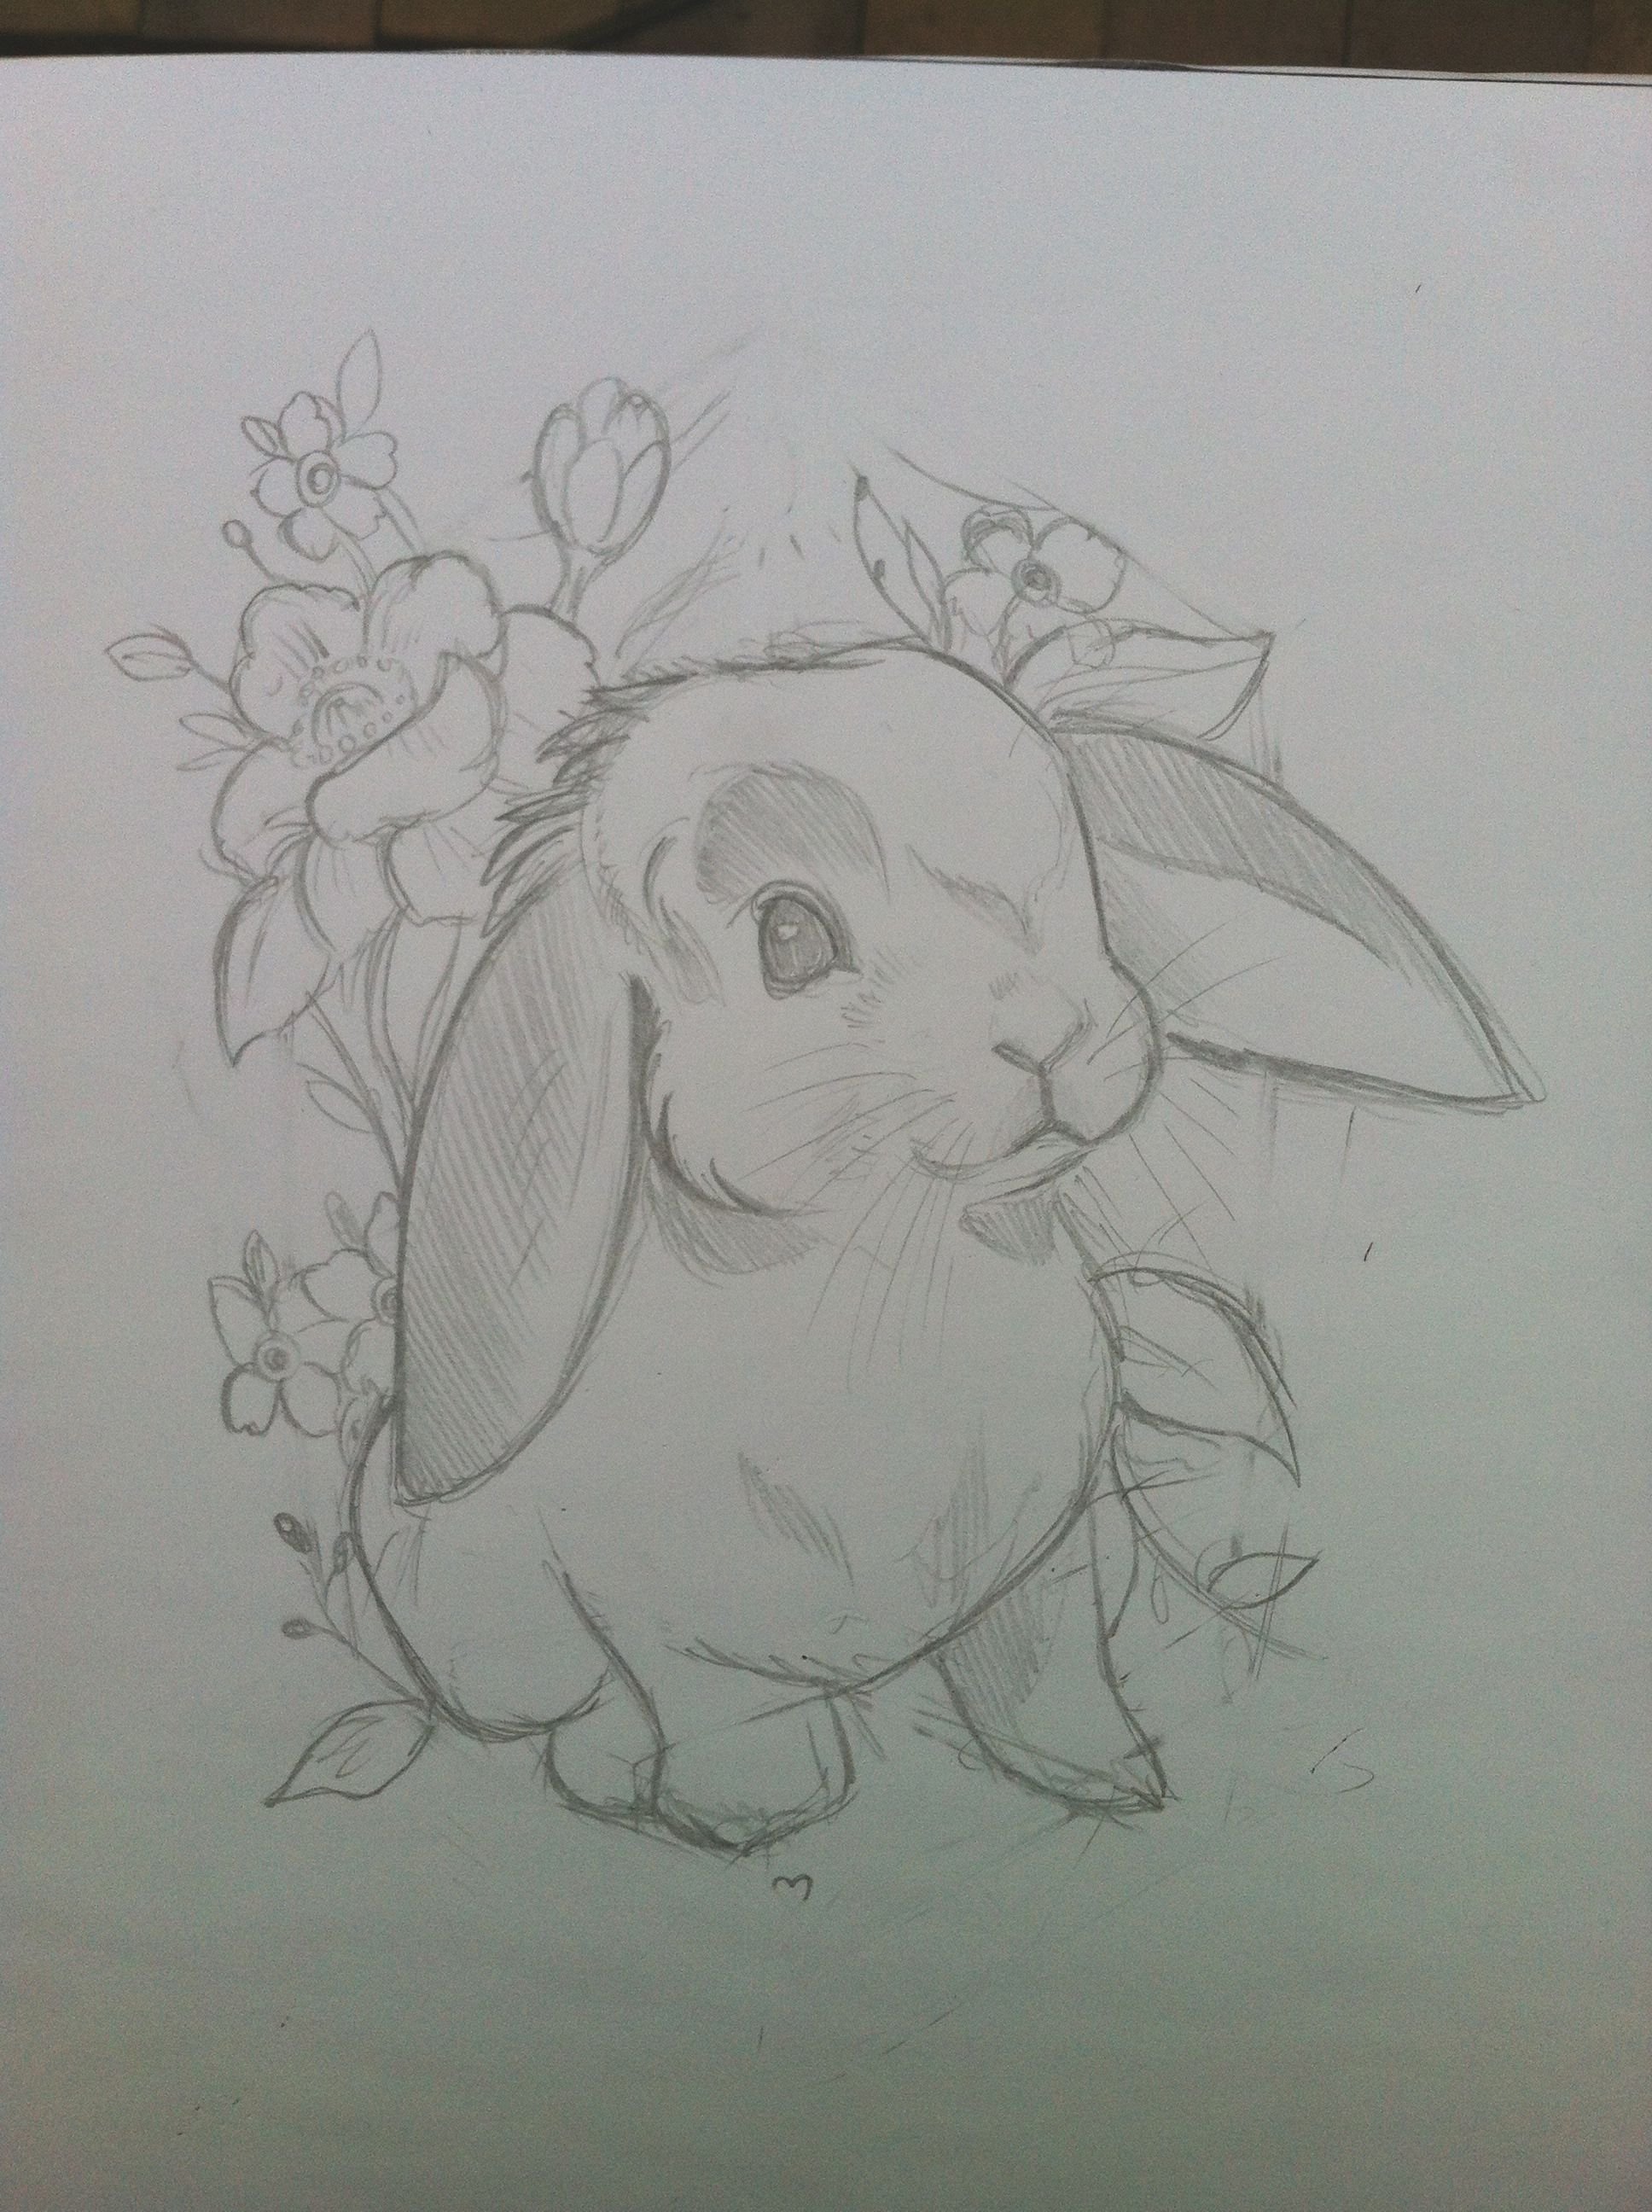 Рисунок кролика для срисовки